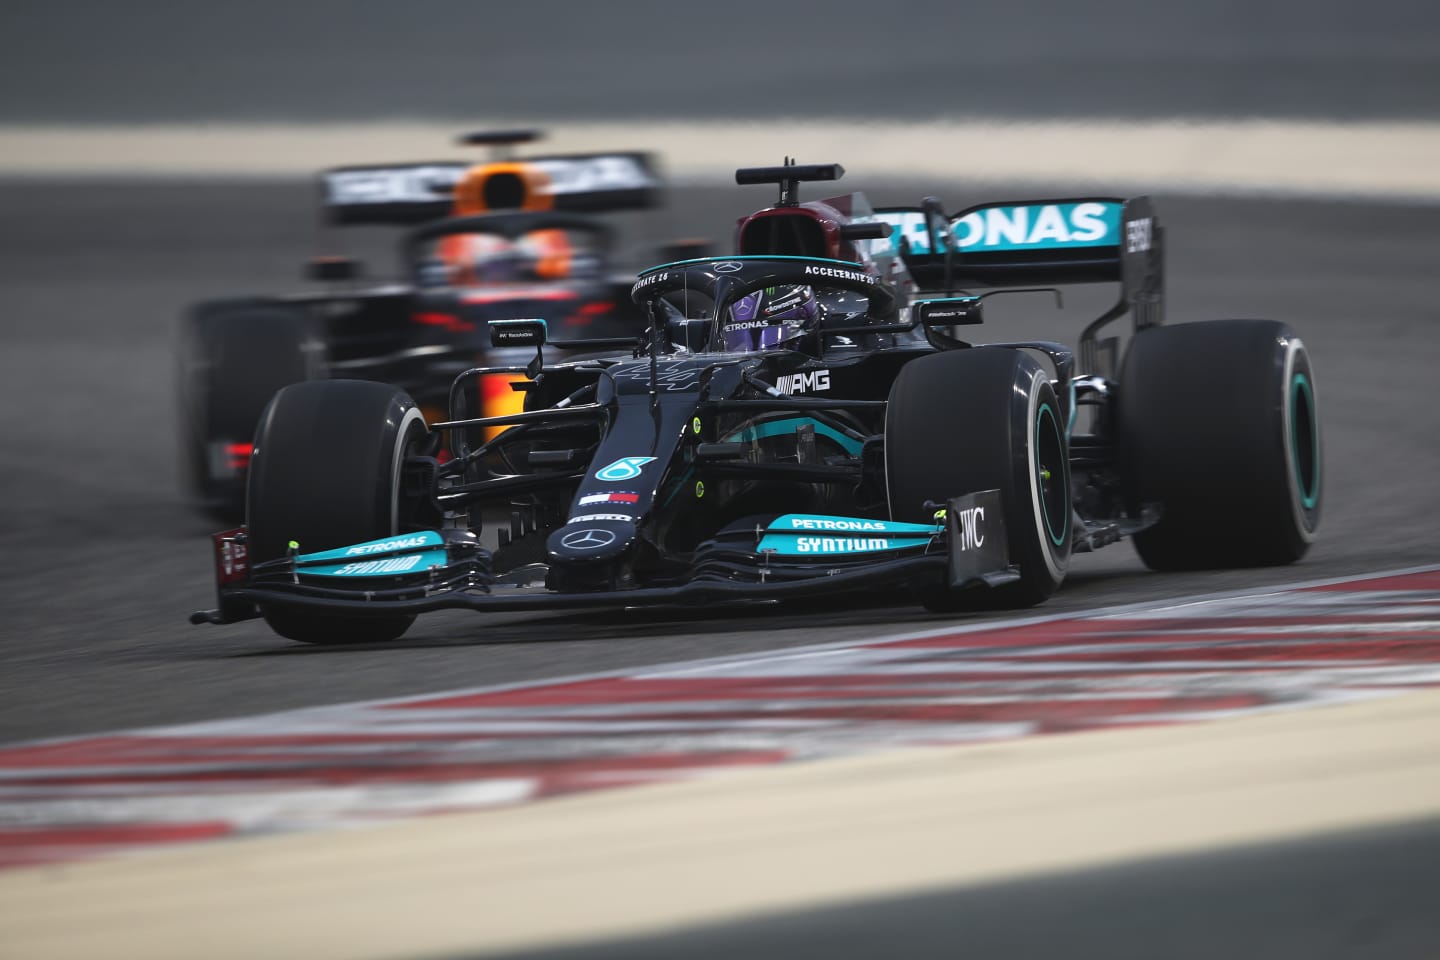 BAHRAIN, BAHRAIN - MARCH 12: Lewis Hamilton of Great Britain driving the (44) Mercedes AMG Petronas